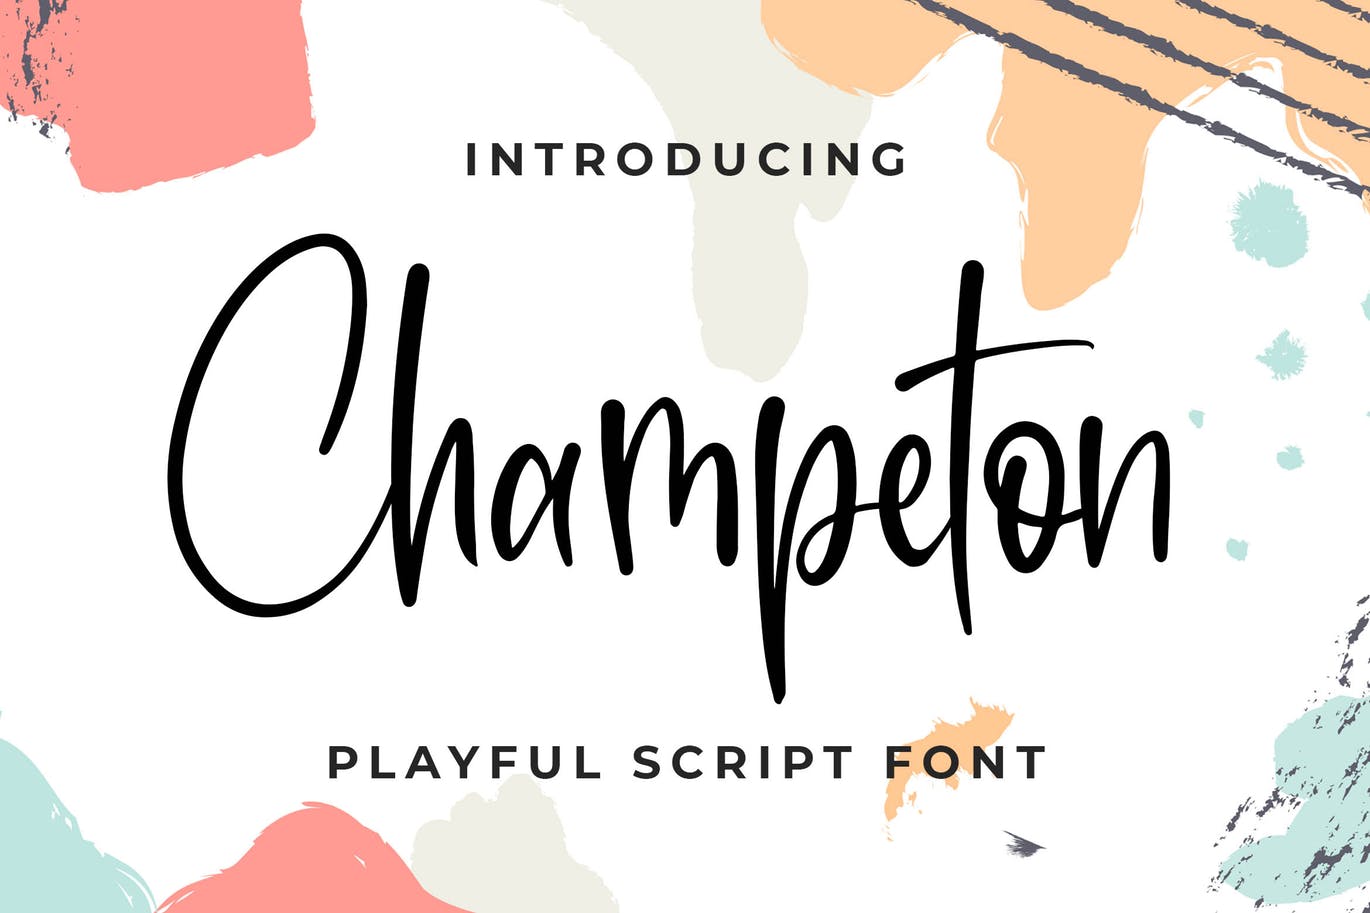 俏皮流畅风格英文书法字体第一素材精选 Champeton – Playful Script Font插图